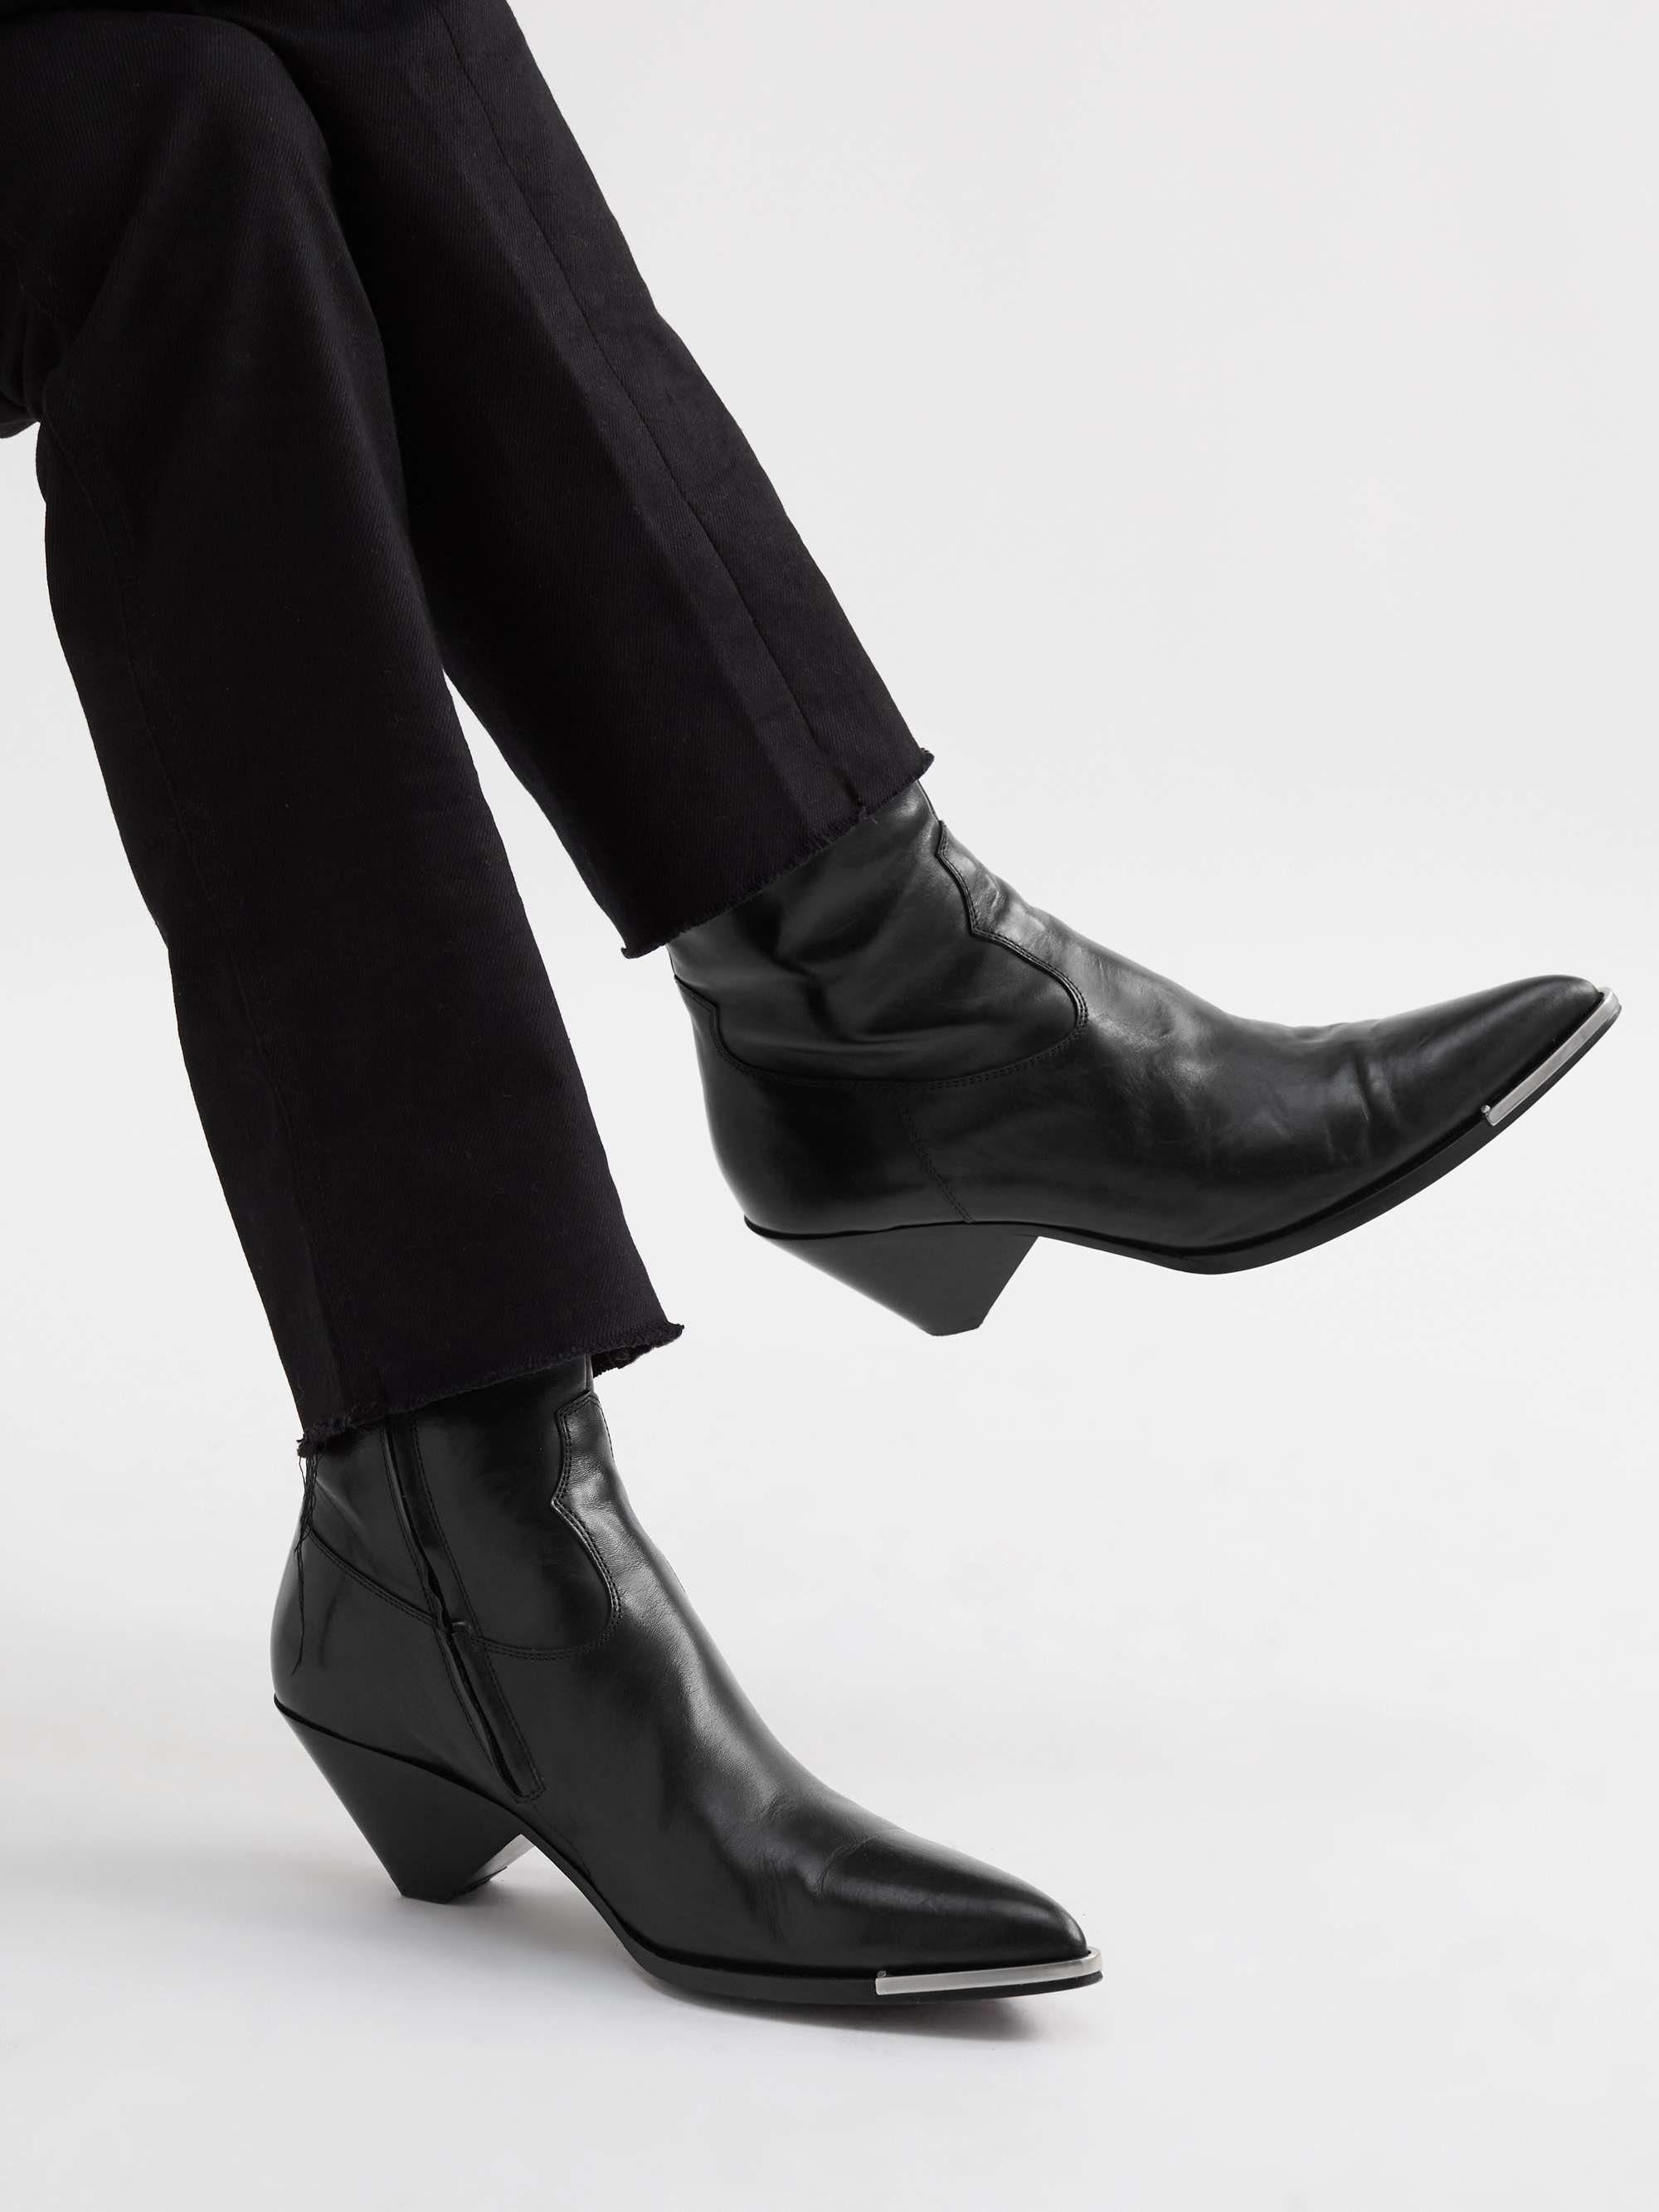 CELINE HOMME Leather Western Boots for Men | MR PORTER